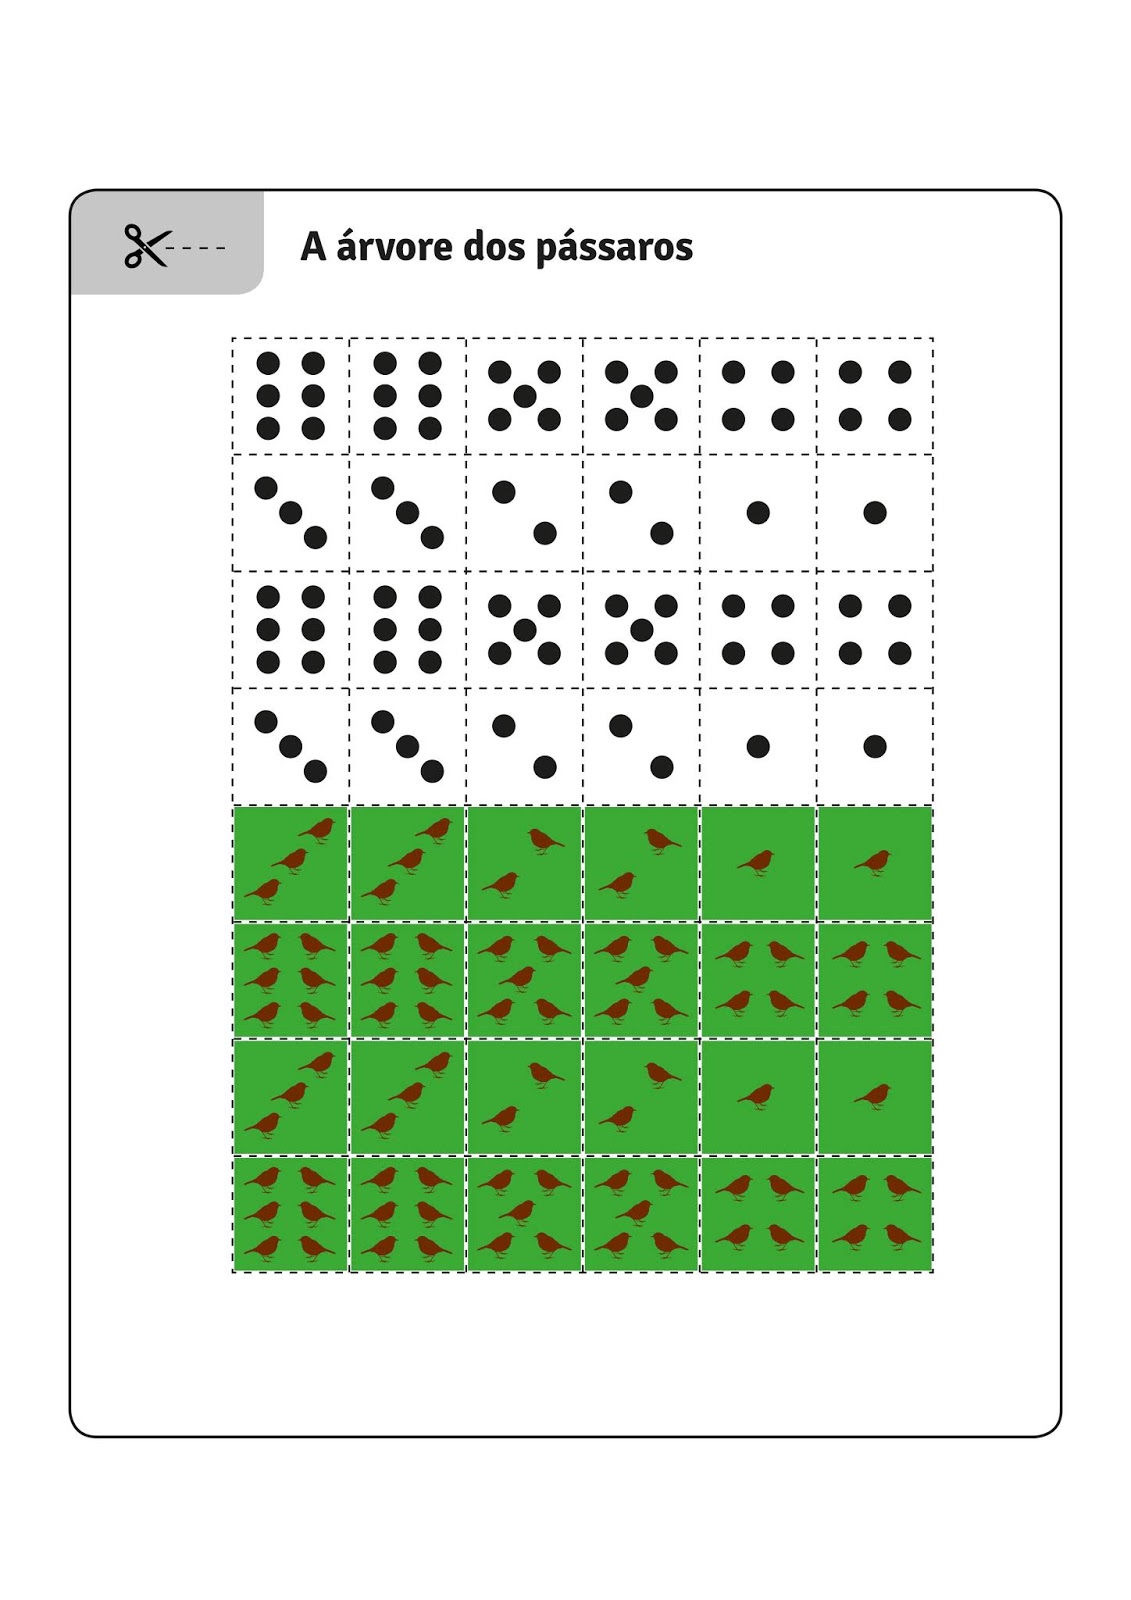 Jogo da Borboleta  Jogos de Matematica